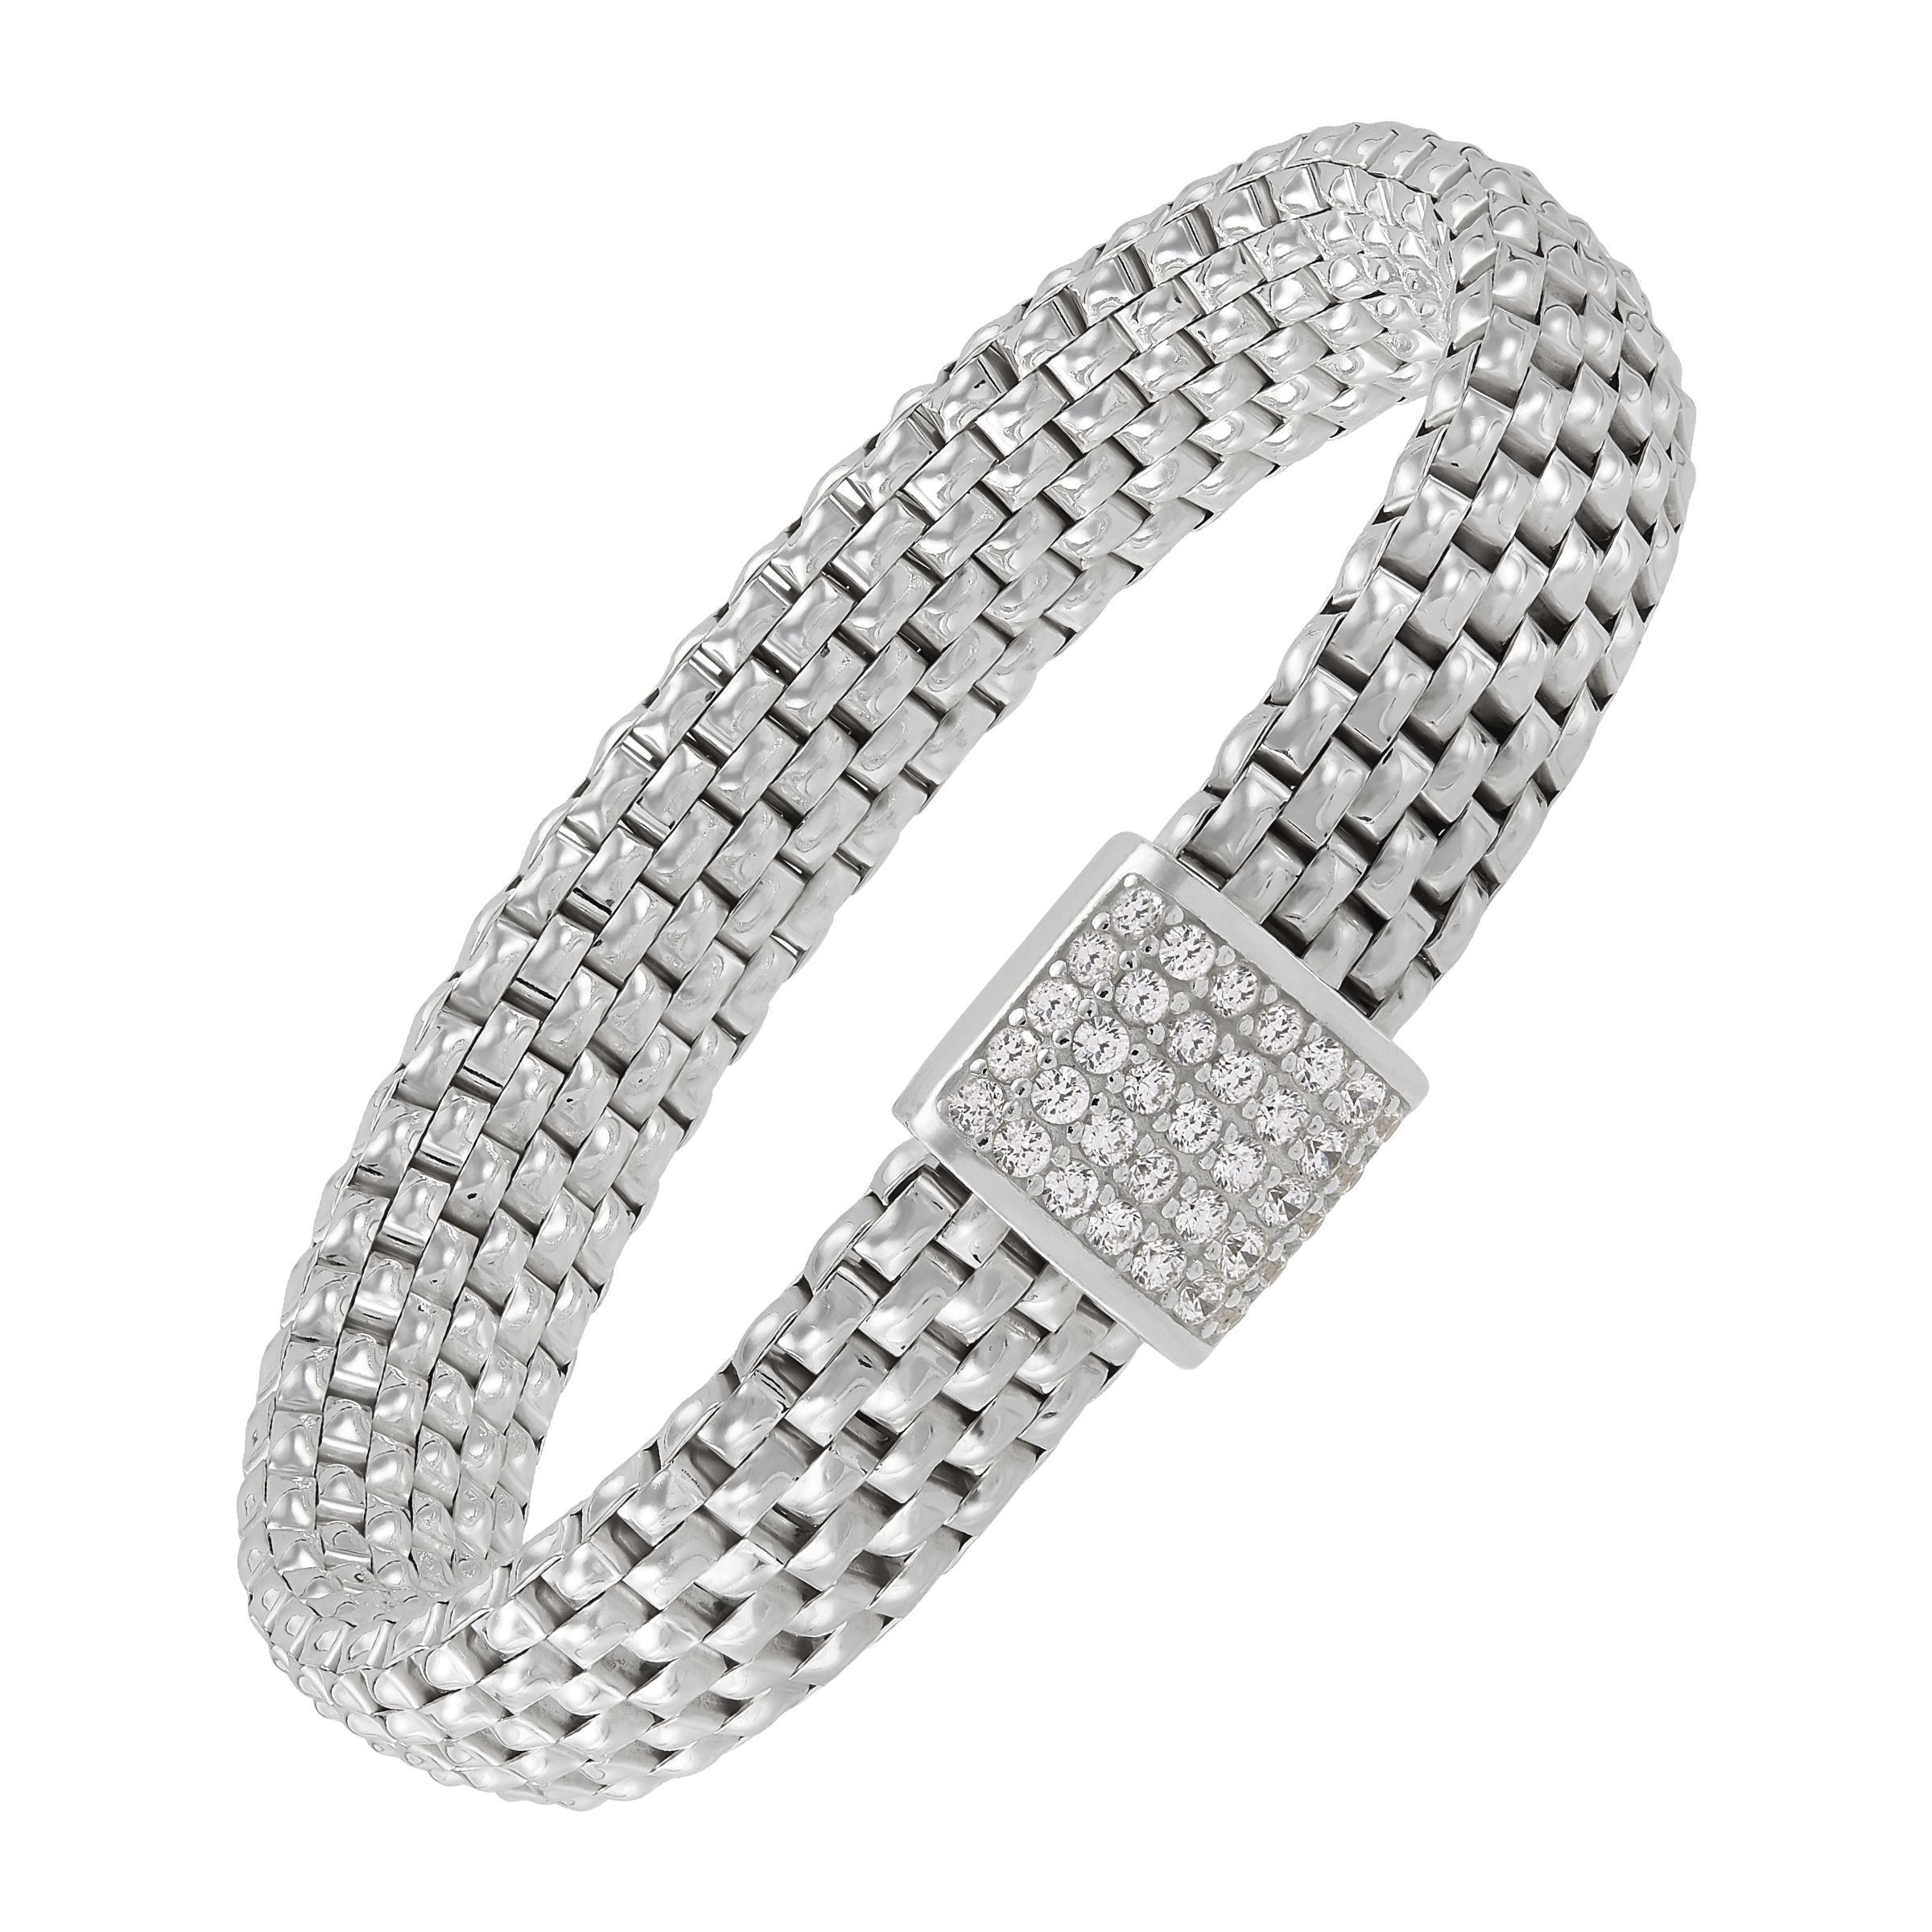 Silpada - Guardami Stretch Band Bracelet - Arktana - Jewelry